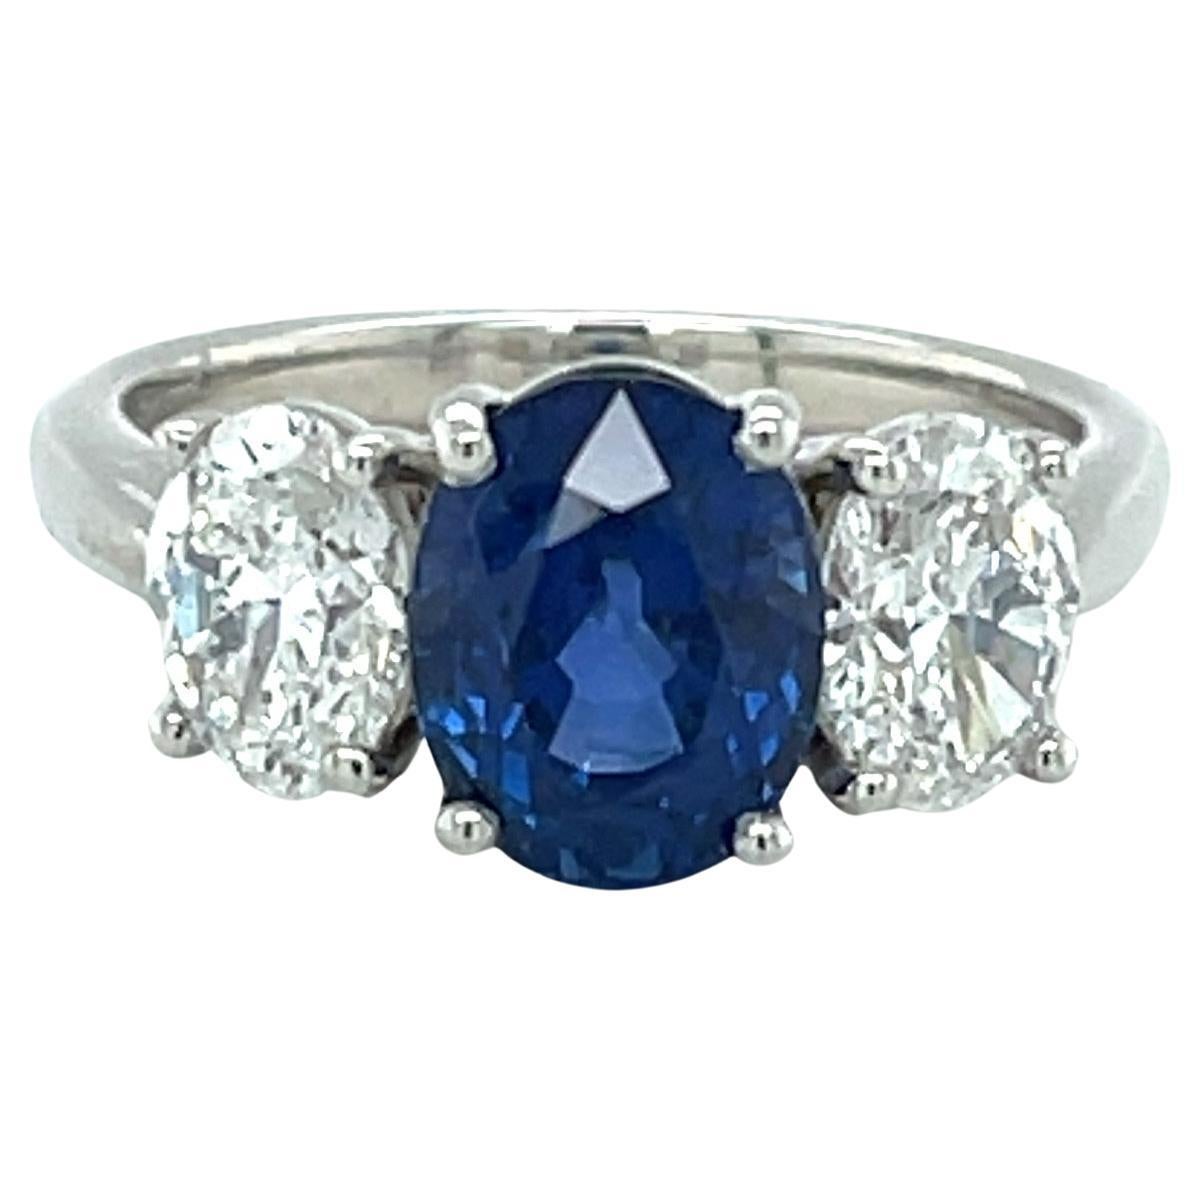 Cette magnifique bague à trois pierres en saphir bleu et diamant est ornée d'un saphir de Ceylan ovale brillant de 3,20 carats, certifié non chauffé par le GIA. La plupart des saphirs sur le marché ont été chauffés pour atteindre cette riche et